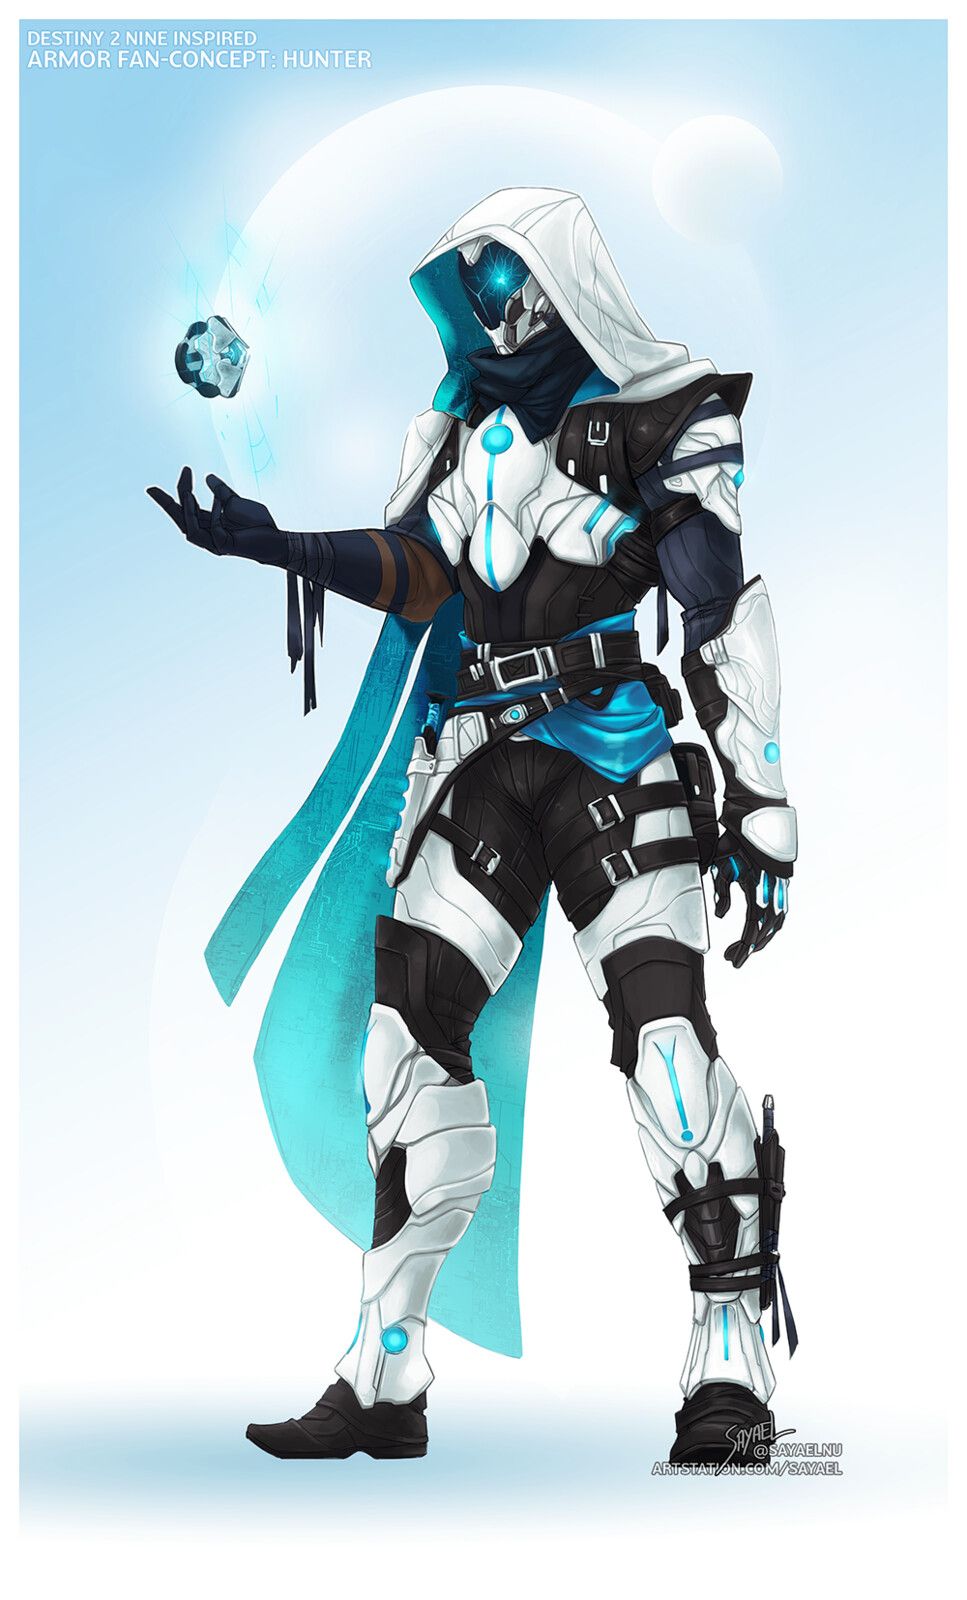 Destiny 2 - Hunter Armor Fan Concept "Nine", Sayael Nu